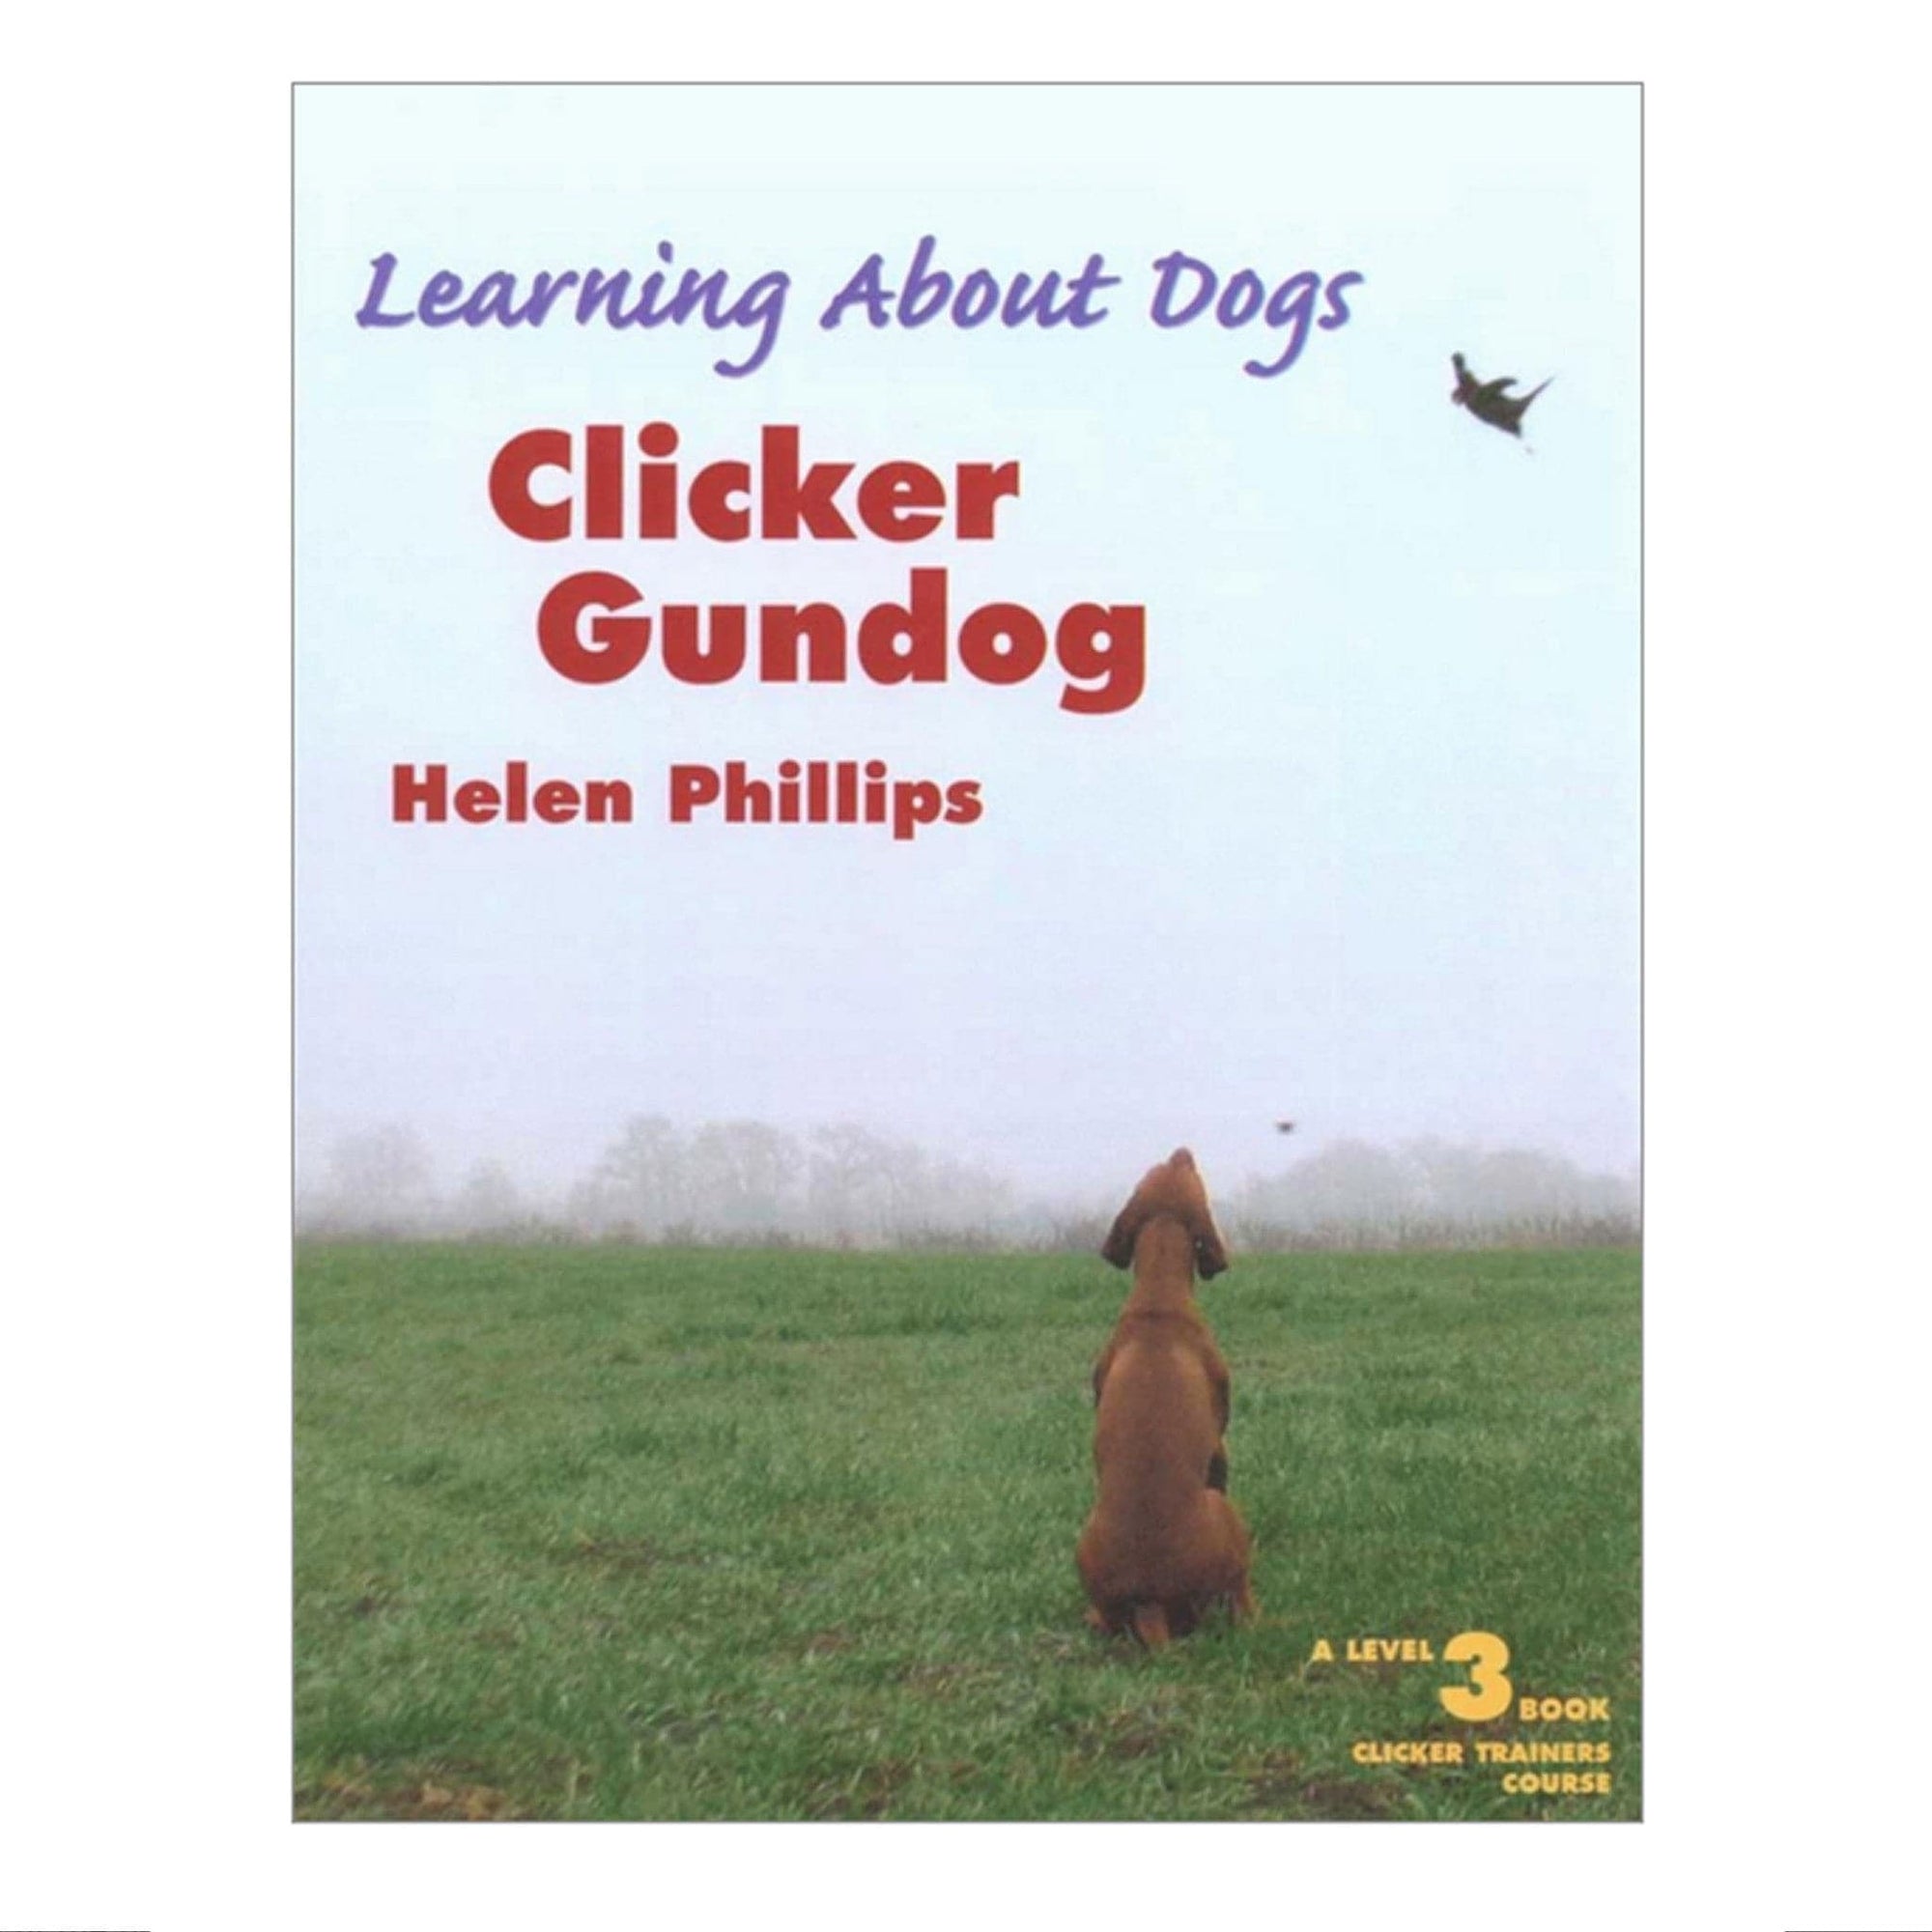 Clicker Gundog by Helen Phillips